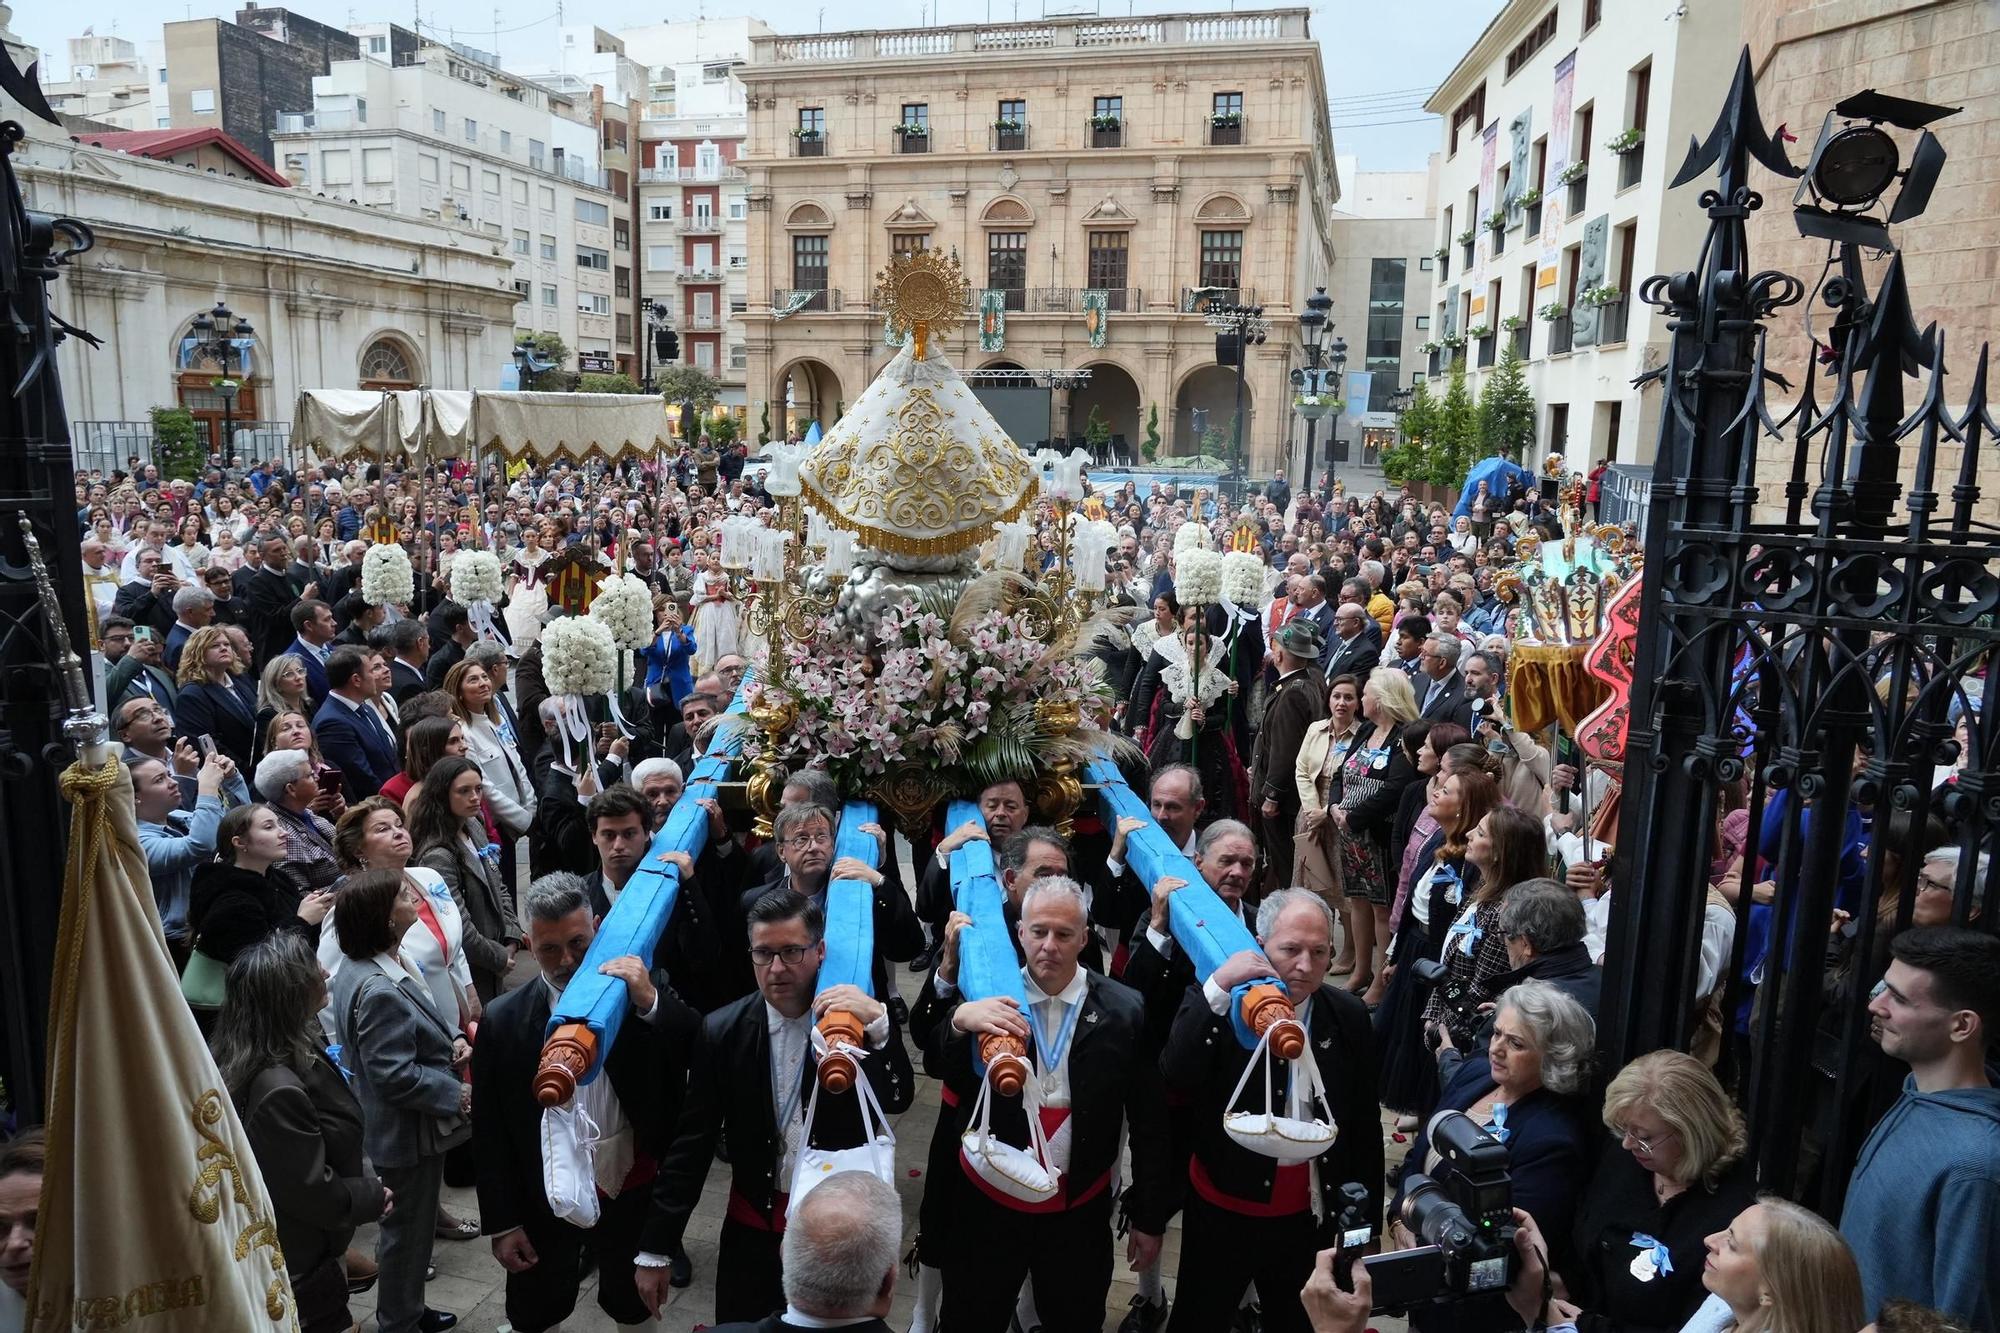 Galería: Trasladan a la Virgen del Lledó en un solemne recorrido hasta la plaza Mayor